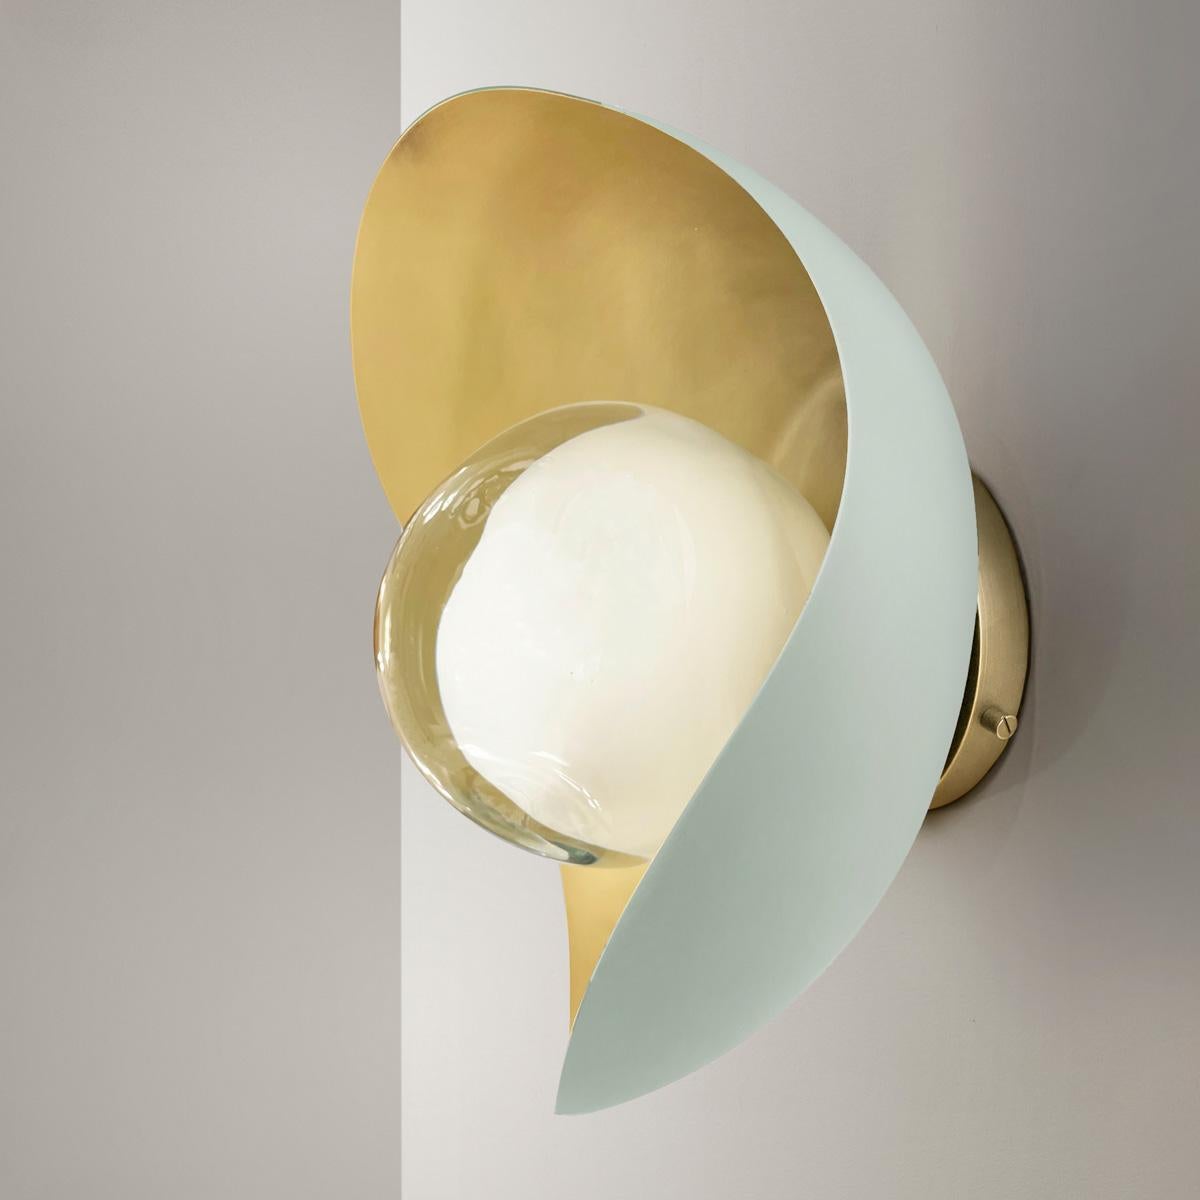 Contemporary Perla Wall Light by Gaspare Asaro-Satin Brass/Acqua Finish For Sale